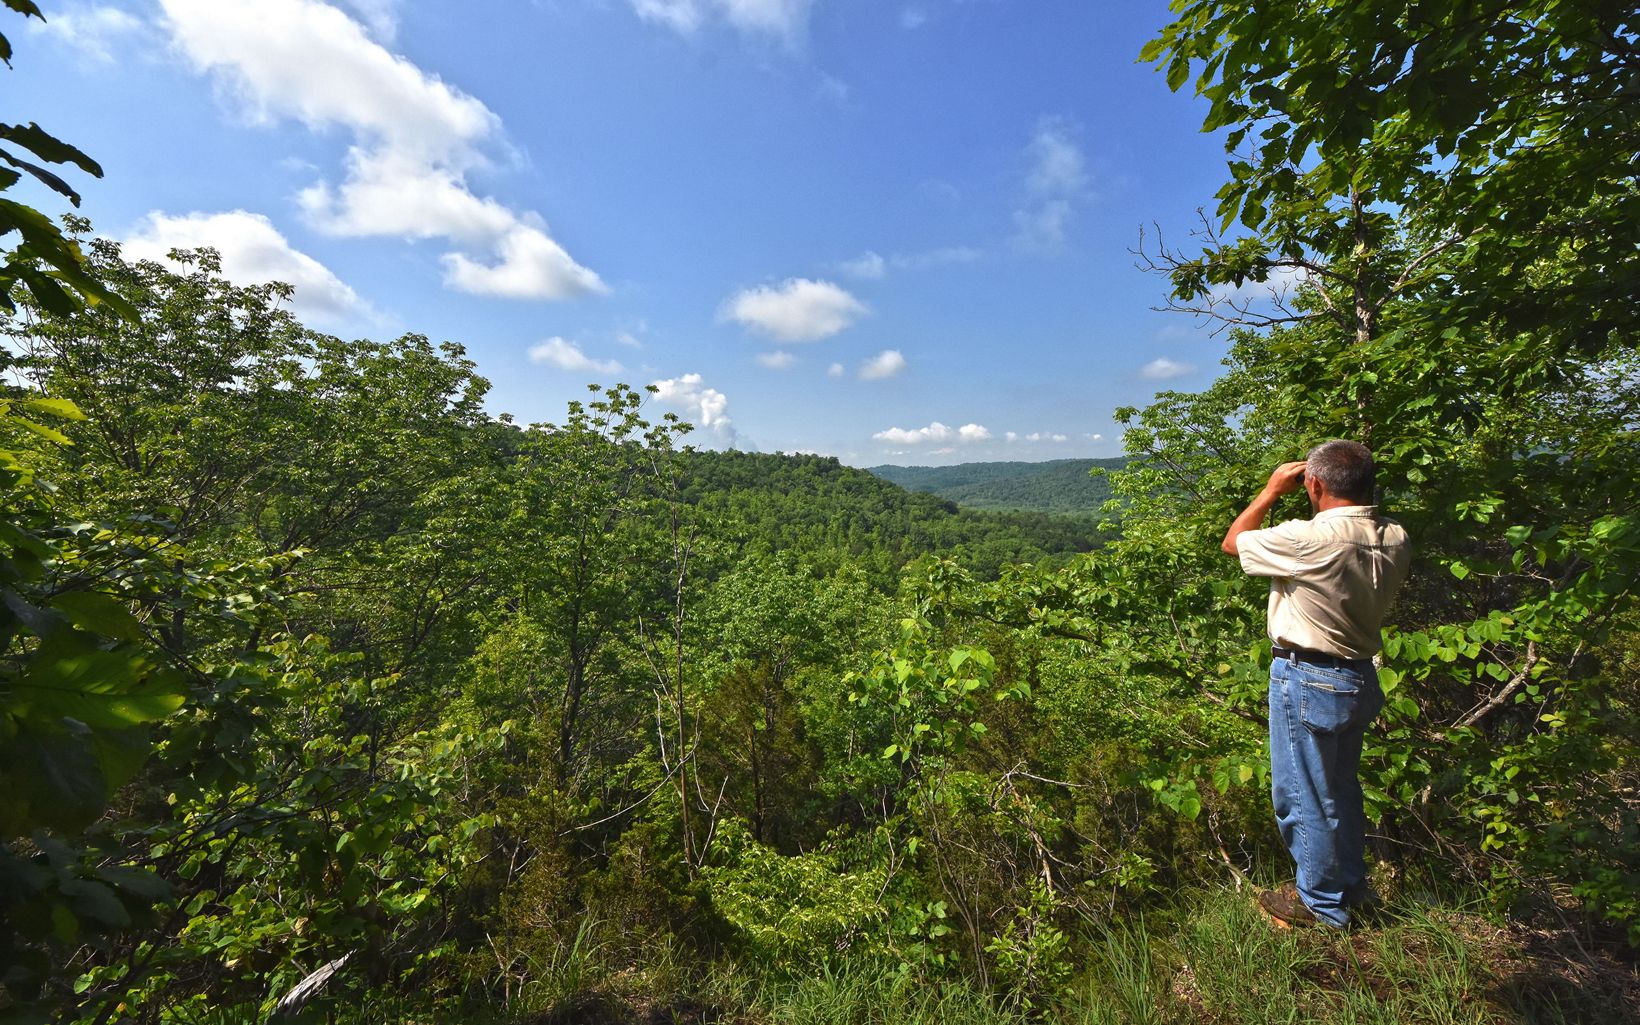 A hiker looks out through binoculars over green hills.